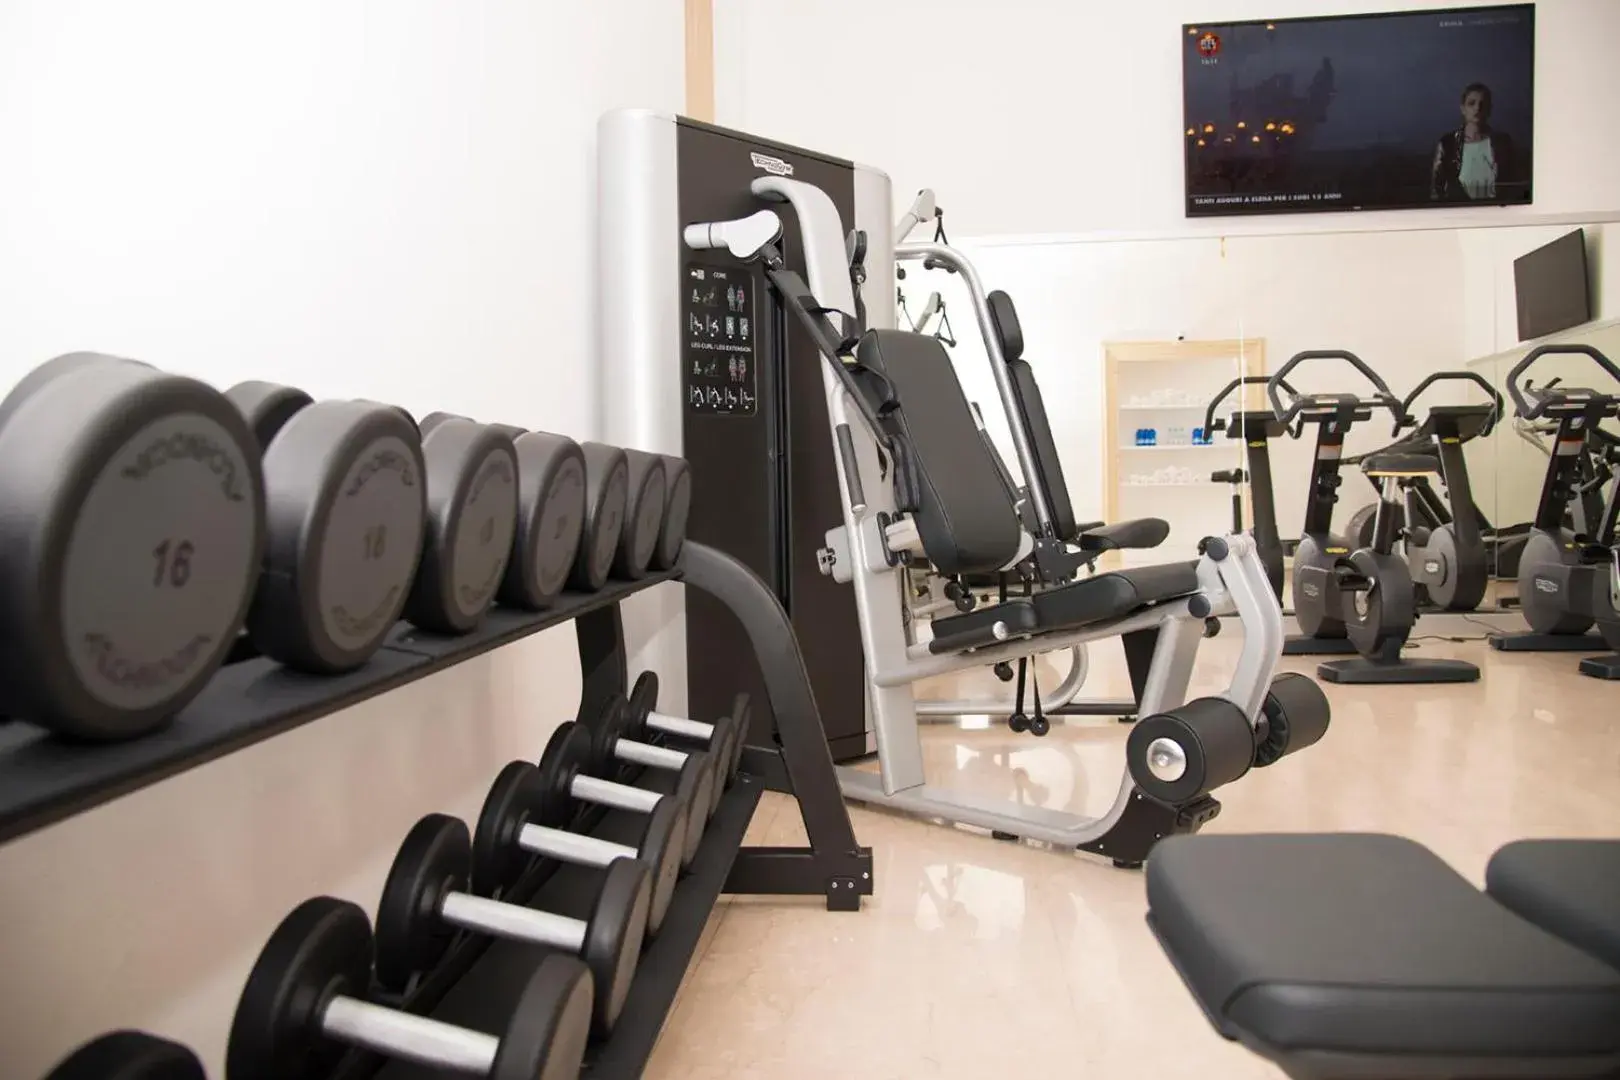 Fitness centre/facilities, Fitness Center/Facilities in Villa Fenaroli Palace Hotel